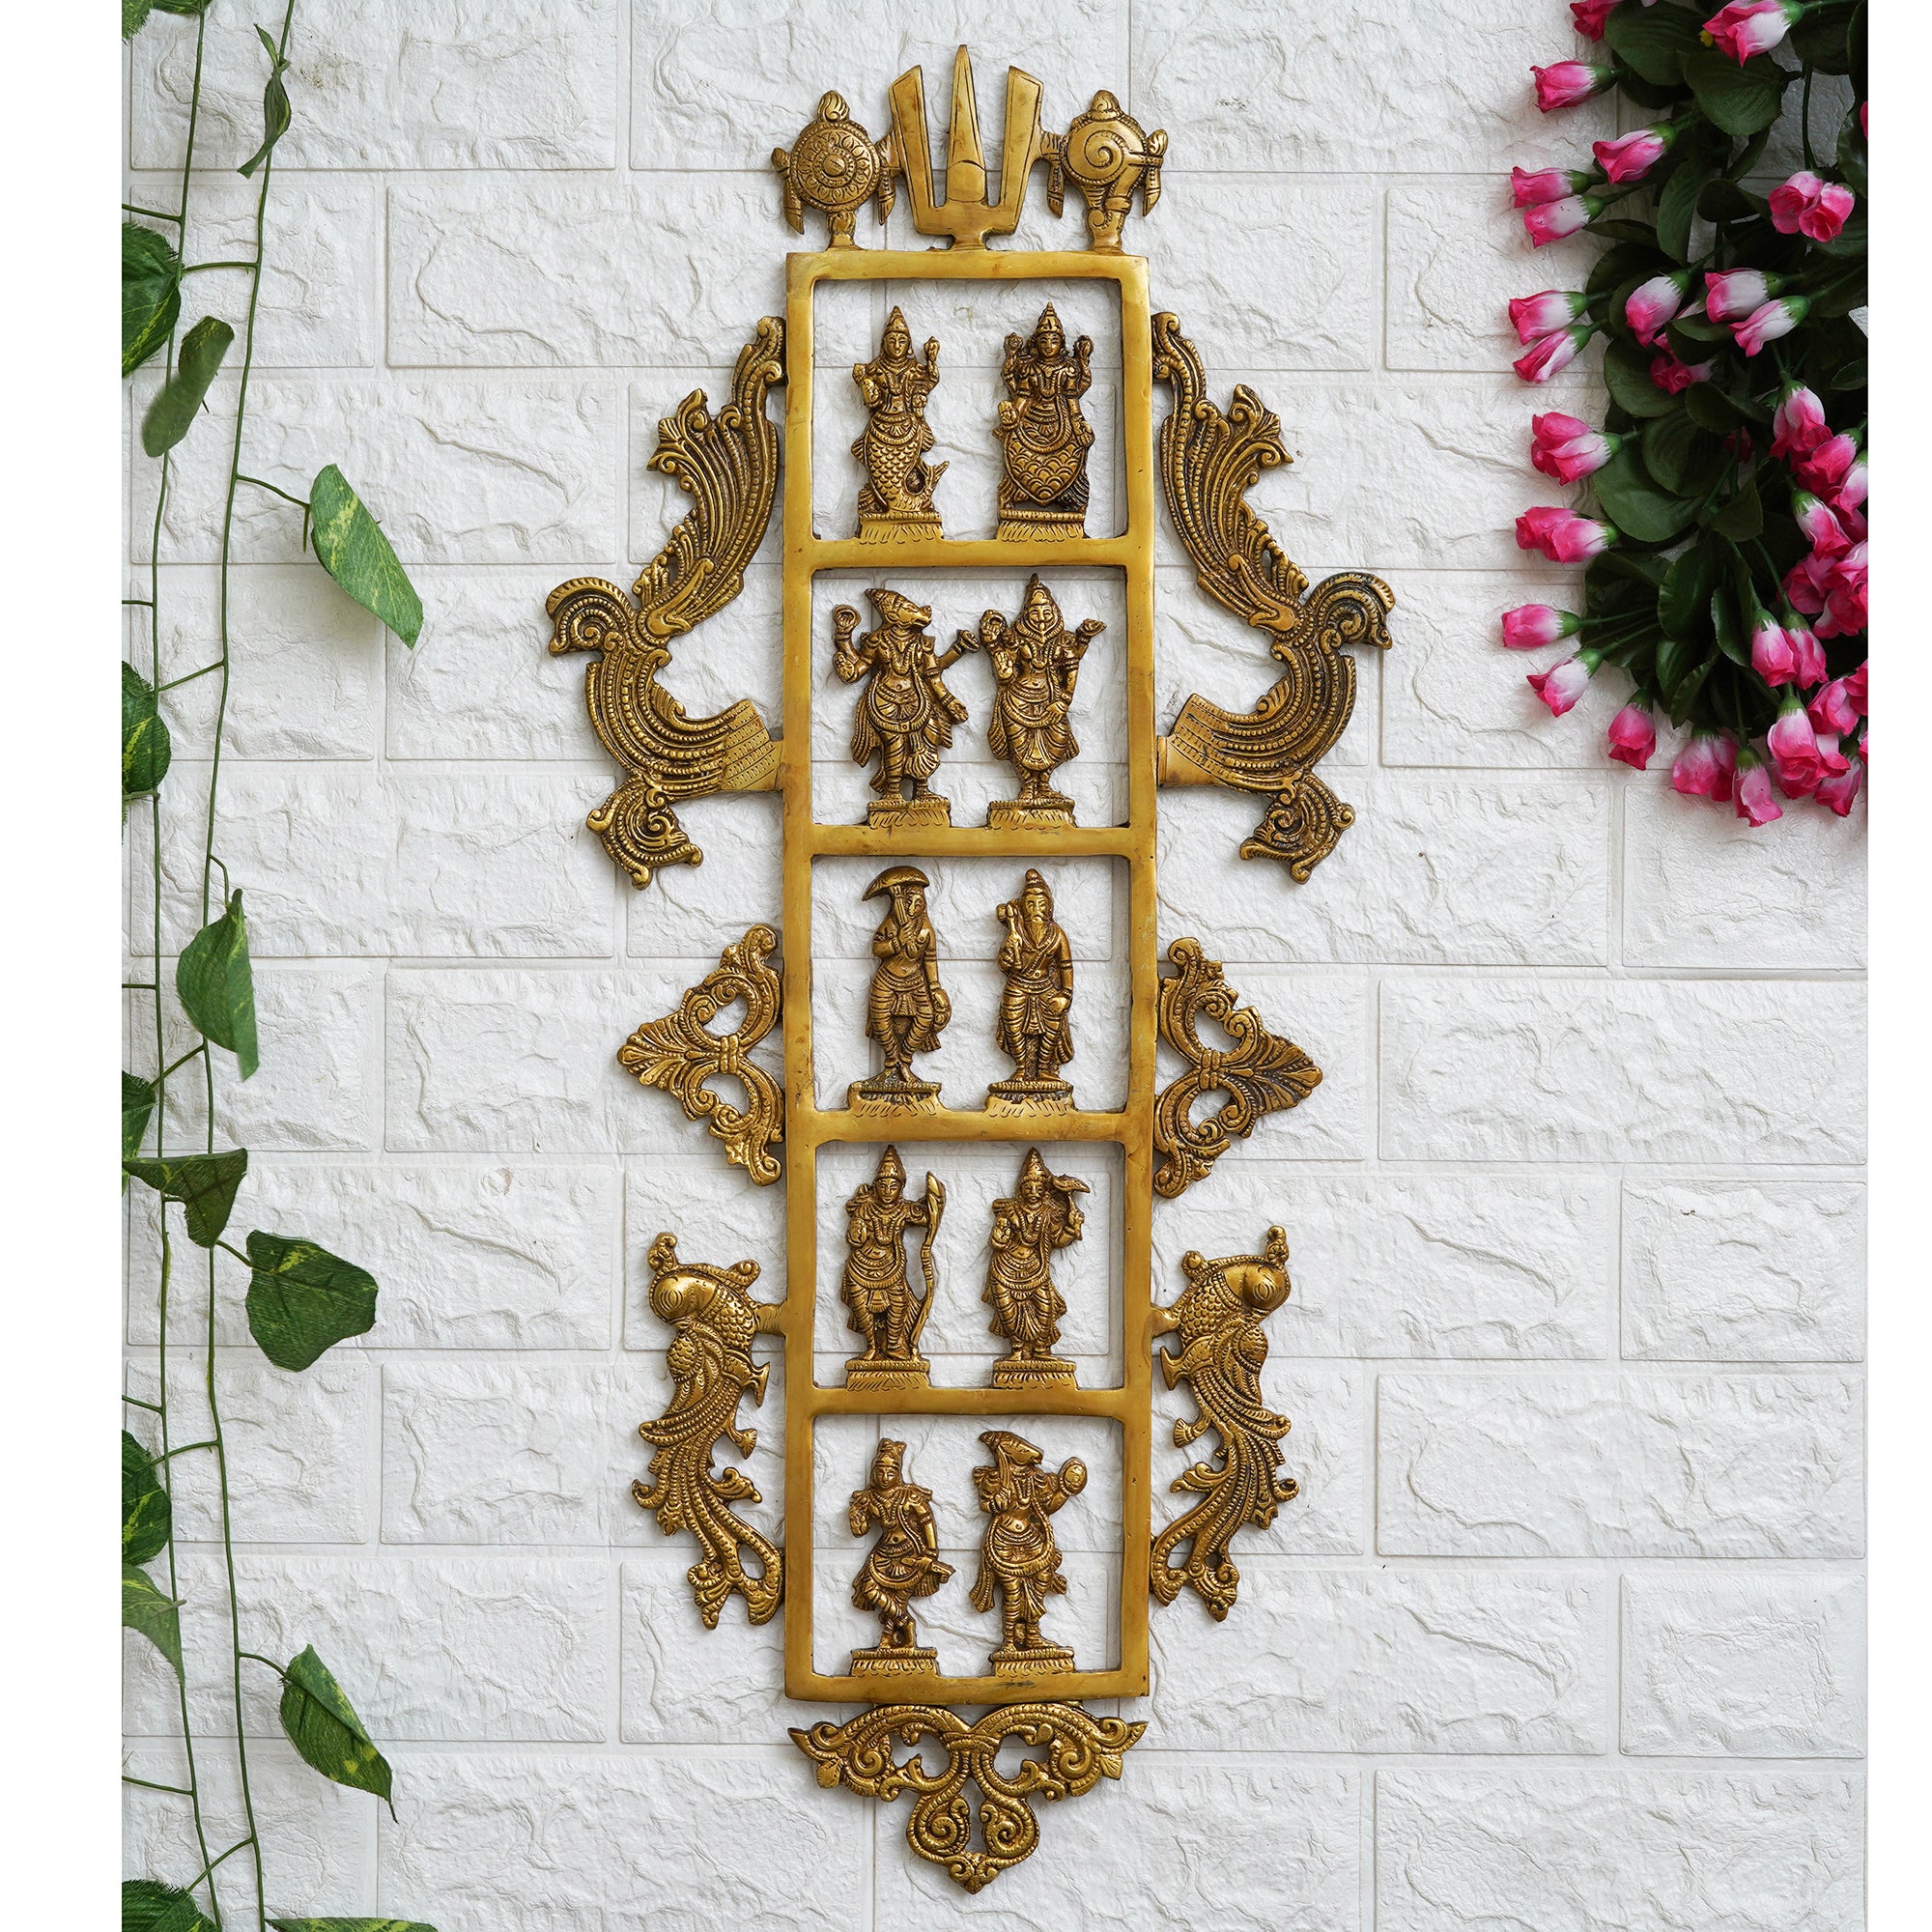 eCraftIndia Golden Brass Lord Vishnu Dashavatara - Ten Incarnations of Vishnu Religious Wall Hanging